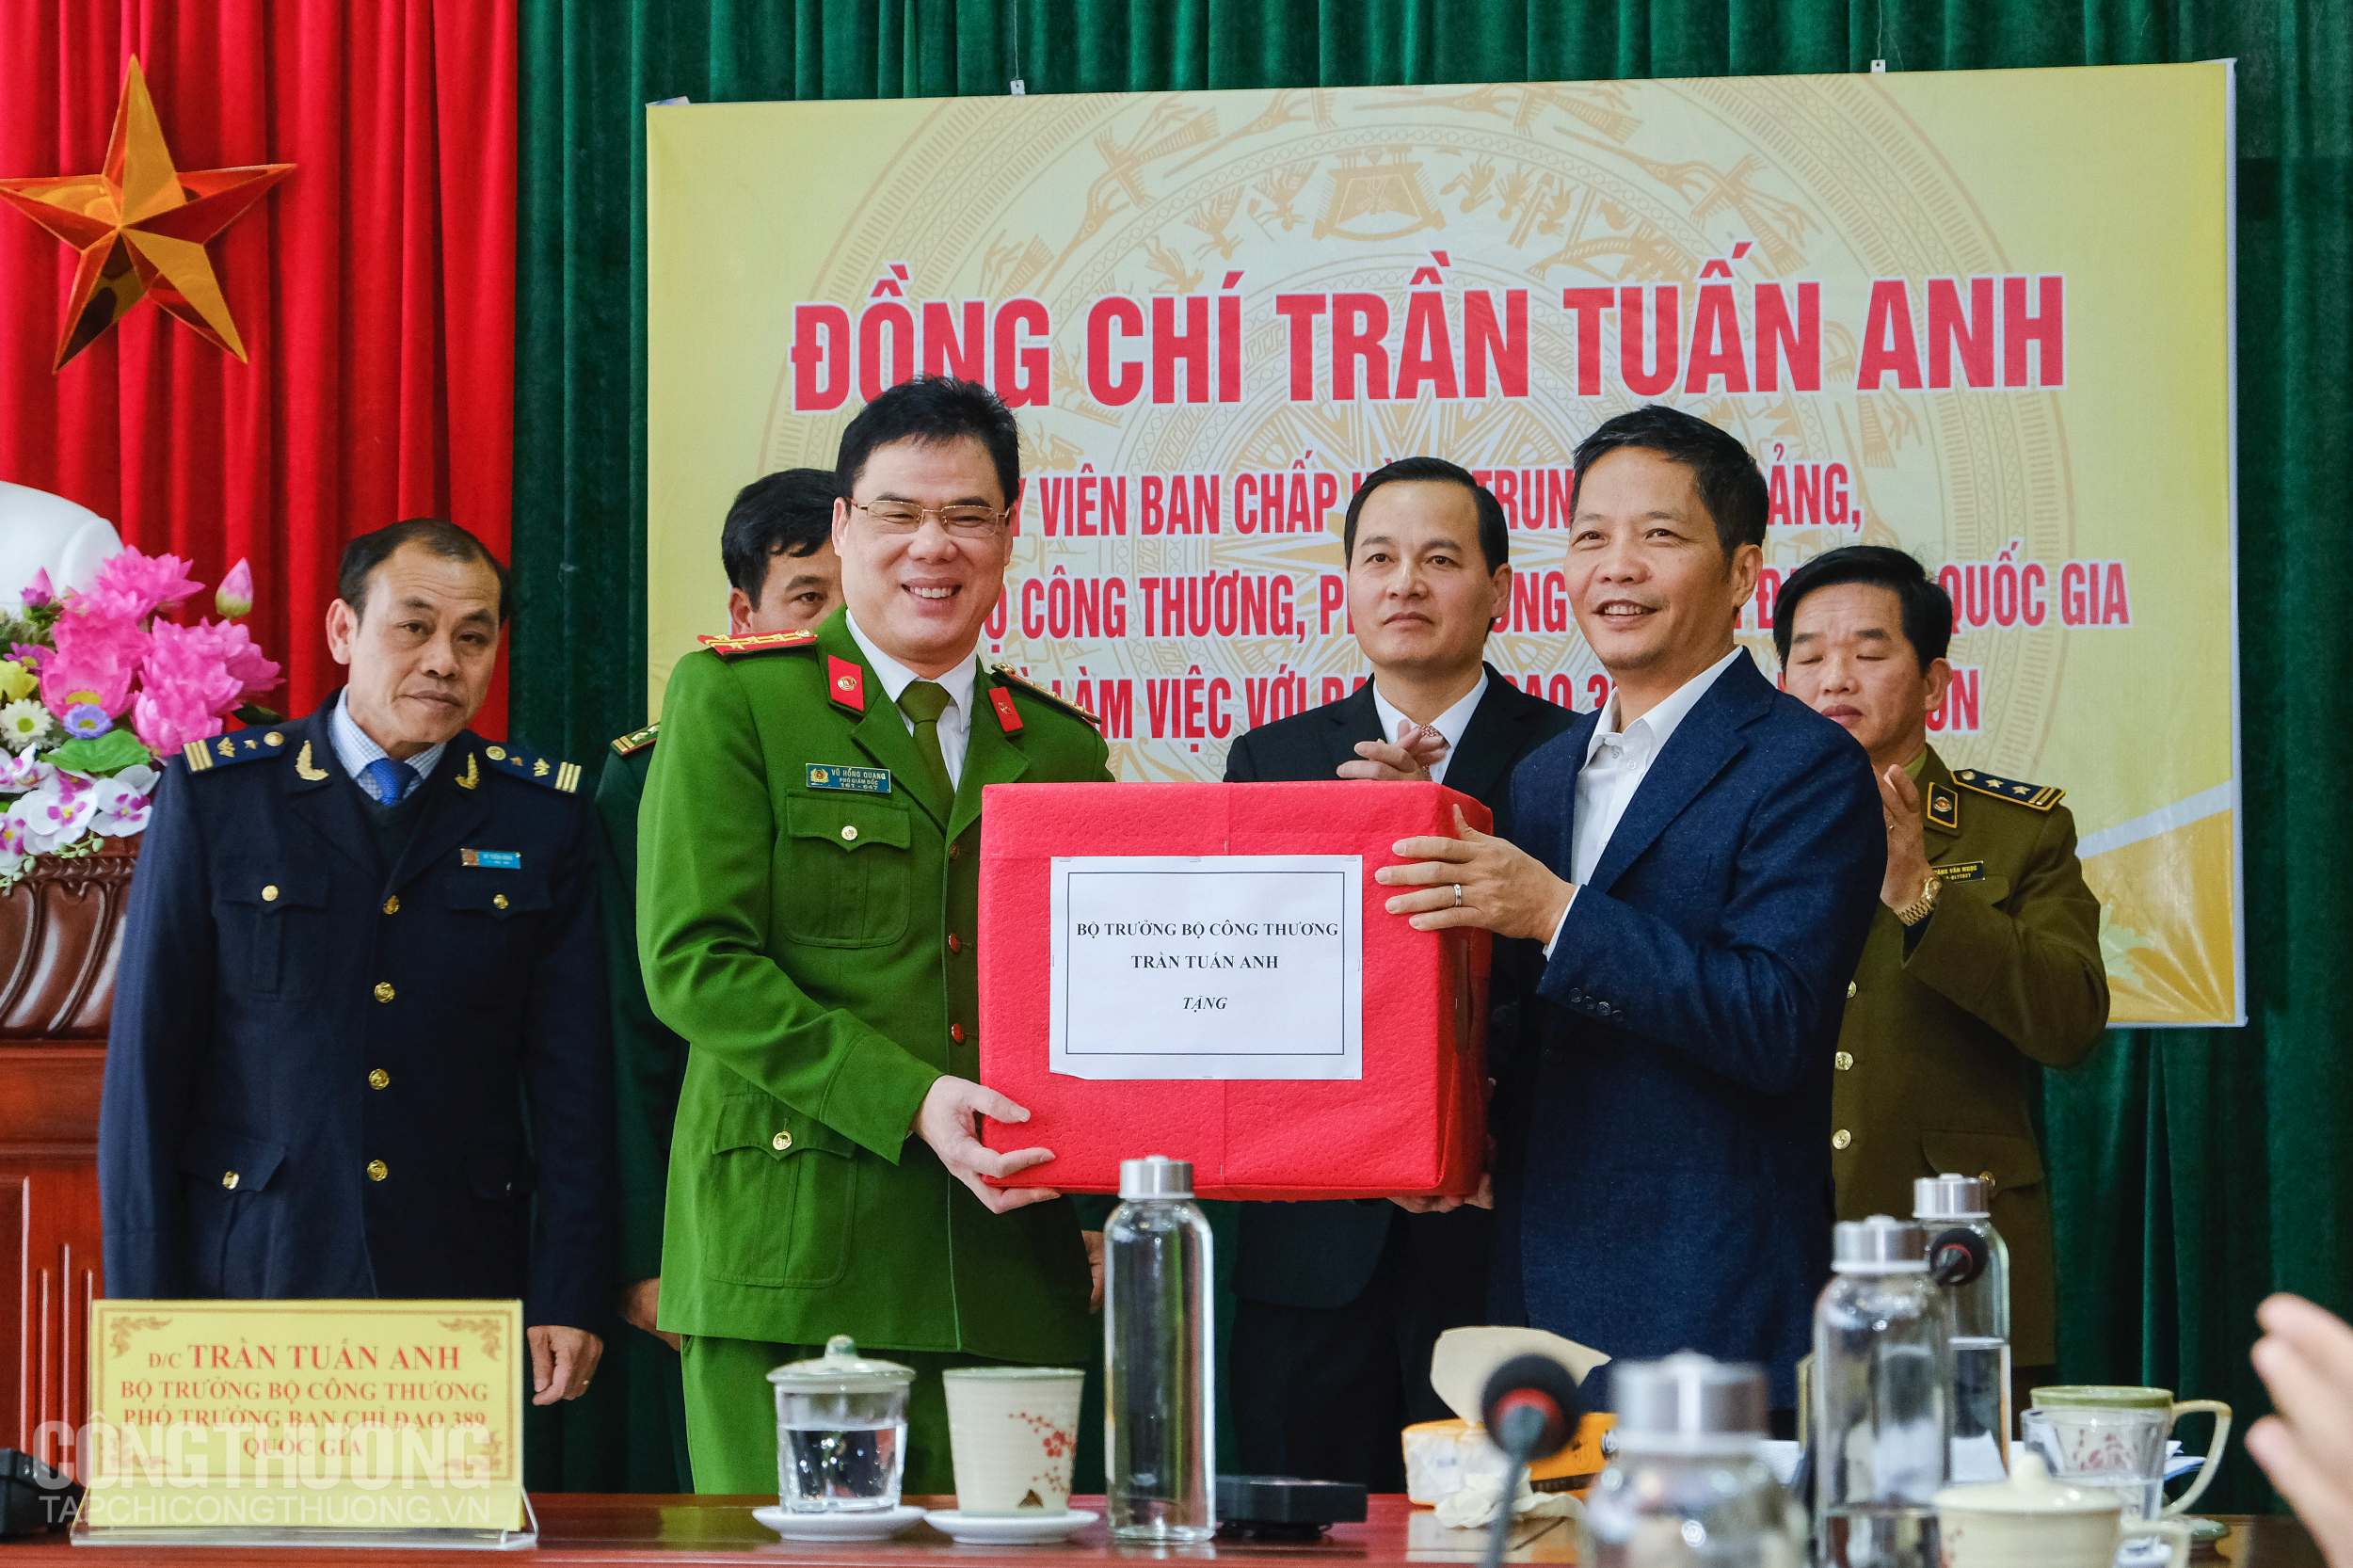 Bộ trưởng Trần Tuấn Anh trao quà cho đại diện các cơ quan chức năng tỉnh Lạng Sơn nhân dịp Tết Nguyên đán